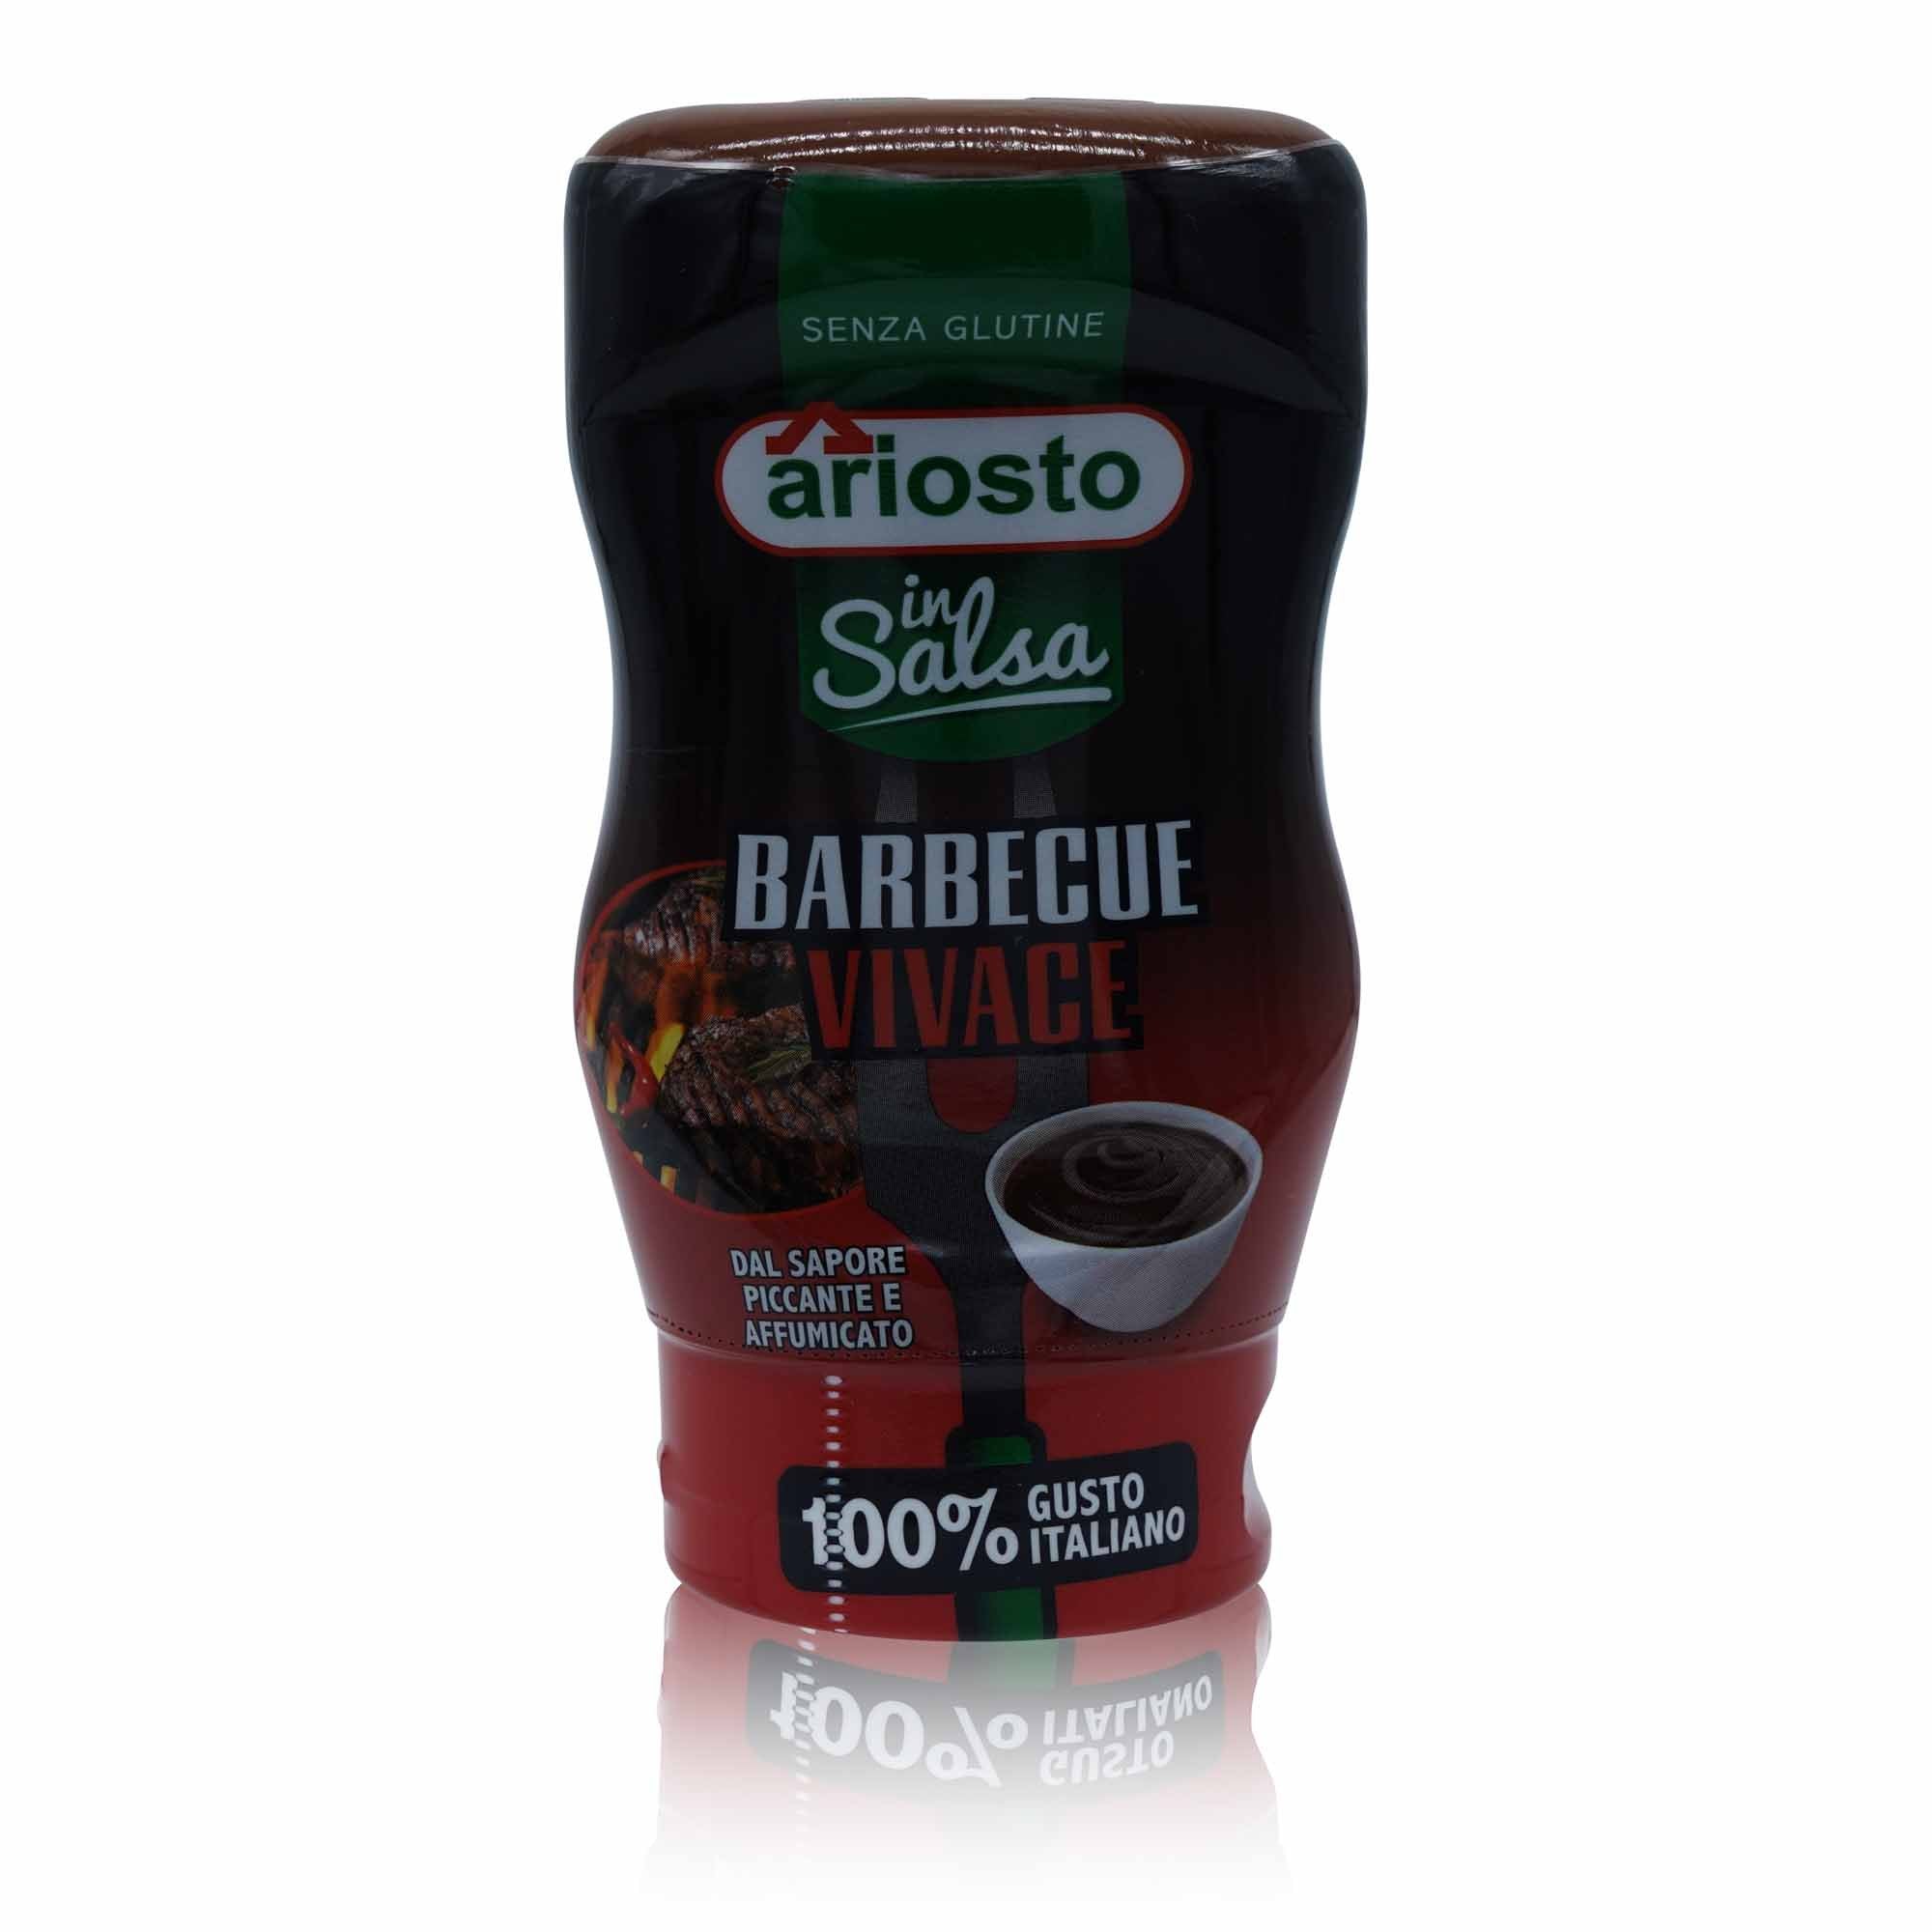 ARIOSTO Insalsa BBQ Vivace – Salsa-Soße Barbecue Vivace - 0,315kg - italienisch-einkaufen.de